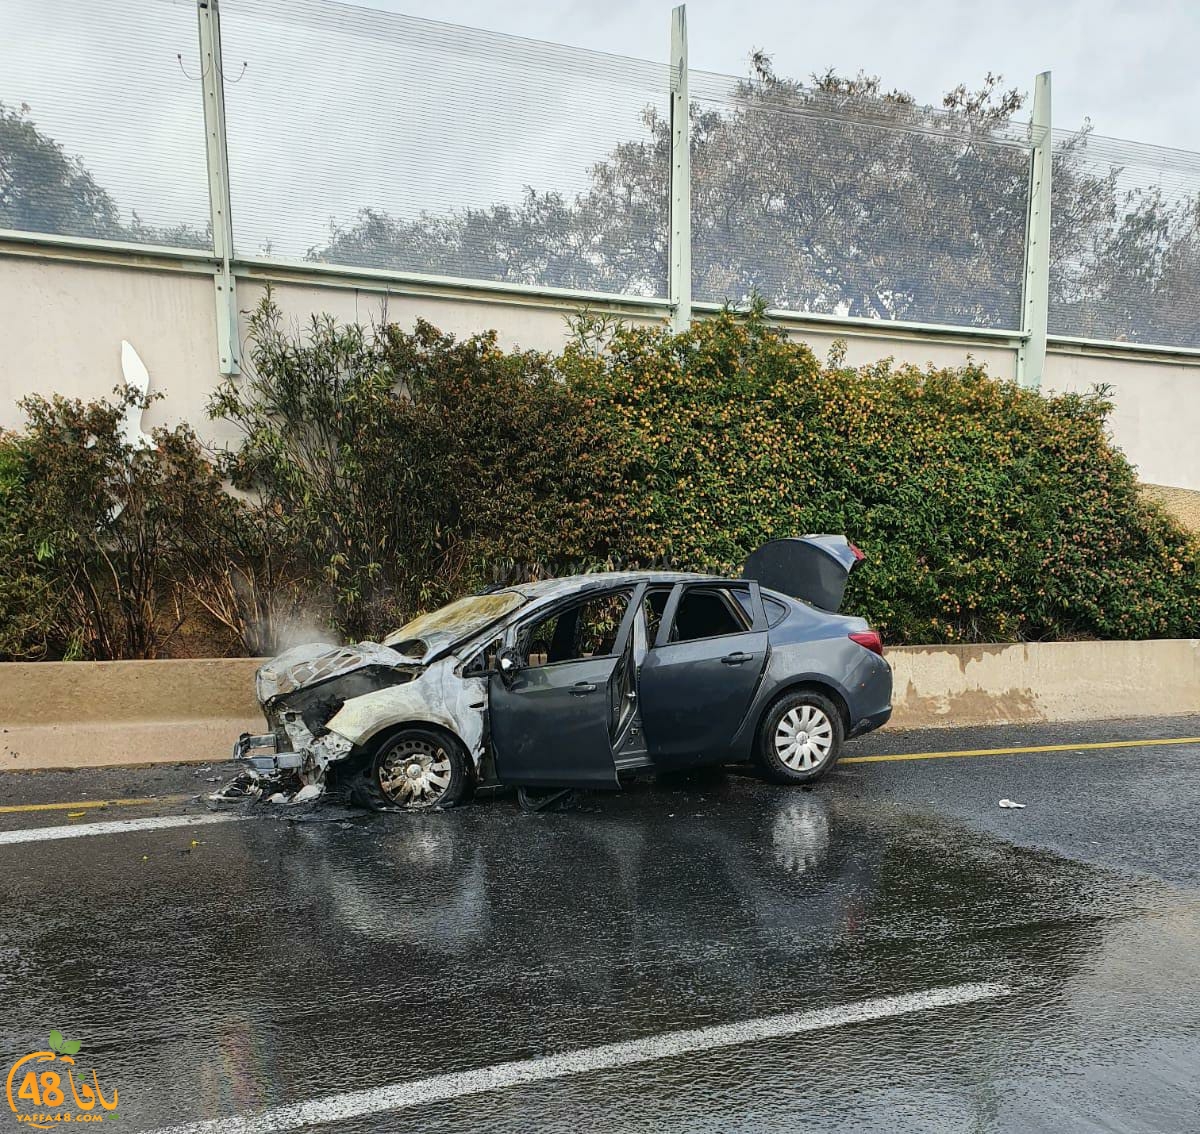  يافا: احتراق سيارة قرب مستشفى فولفسون دون اصابات